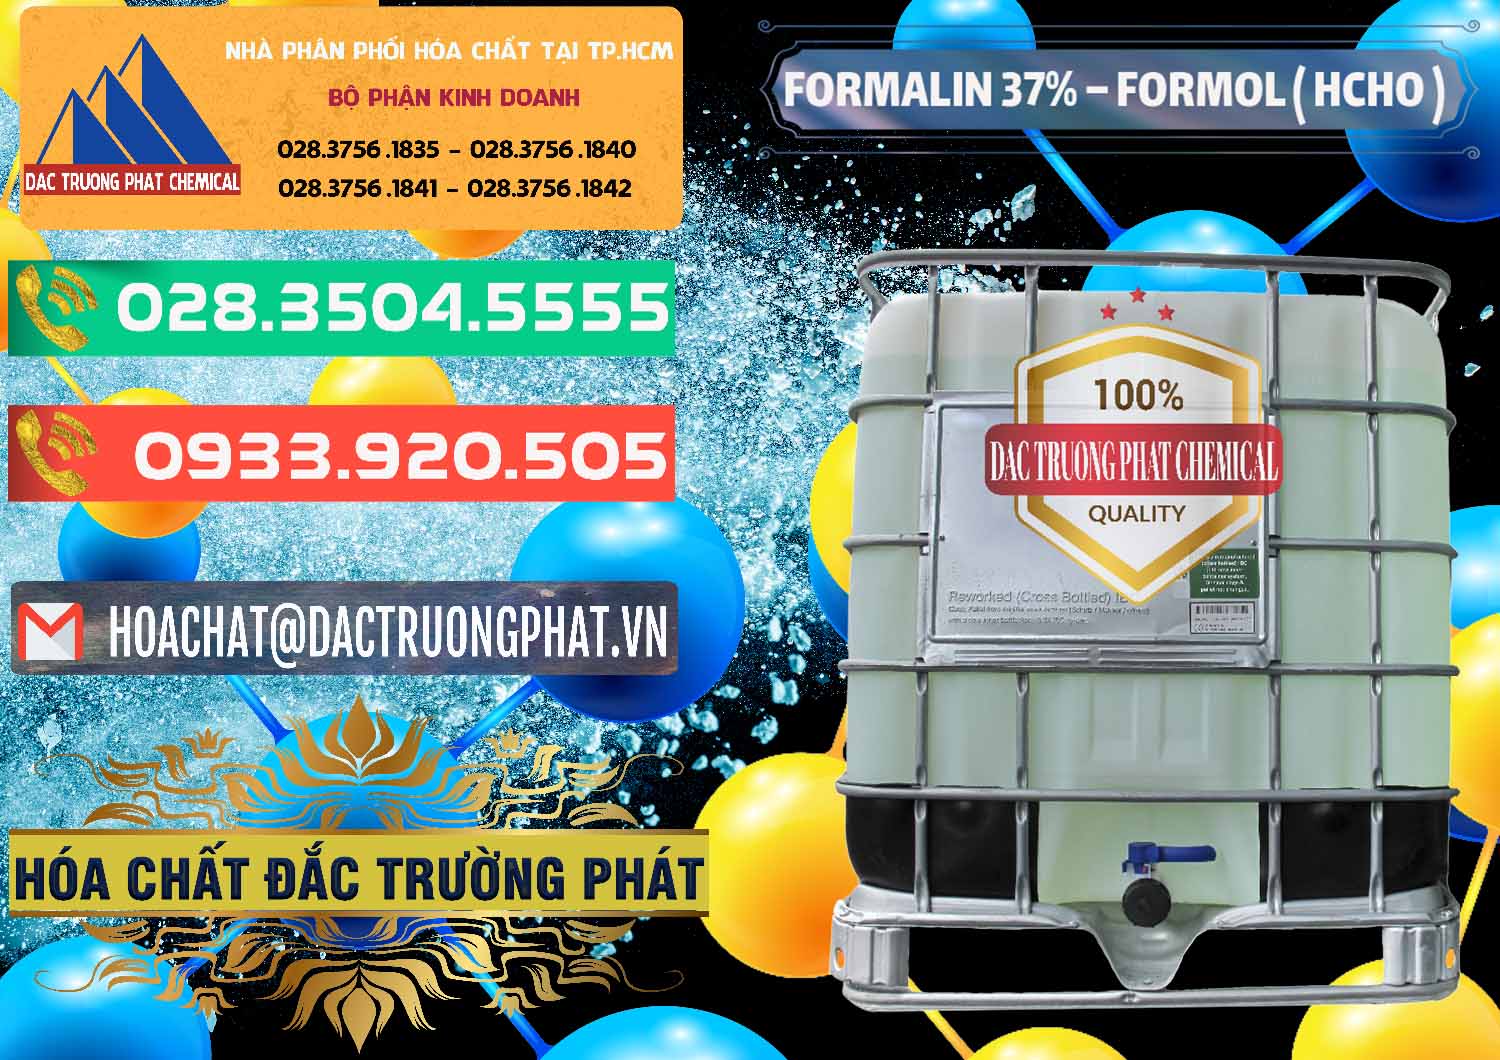 Nơi phân phối & cung ứng Formalin - Formol ( HCHO ) 37% Việt Nam - 0187 - Nhà phân phối ( cung cấp ) hóa chất tại TP.HCM - congtyhoachat.com.vn